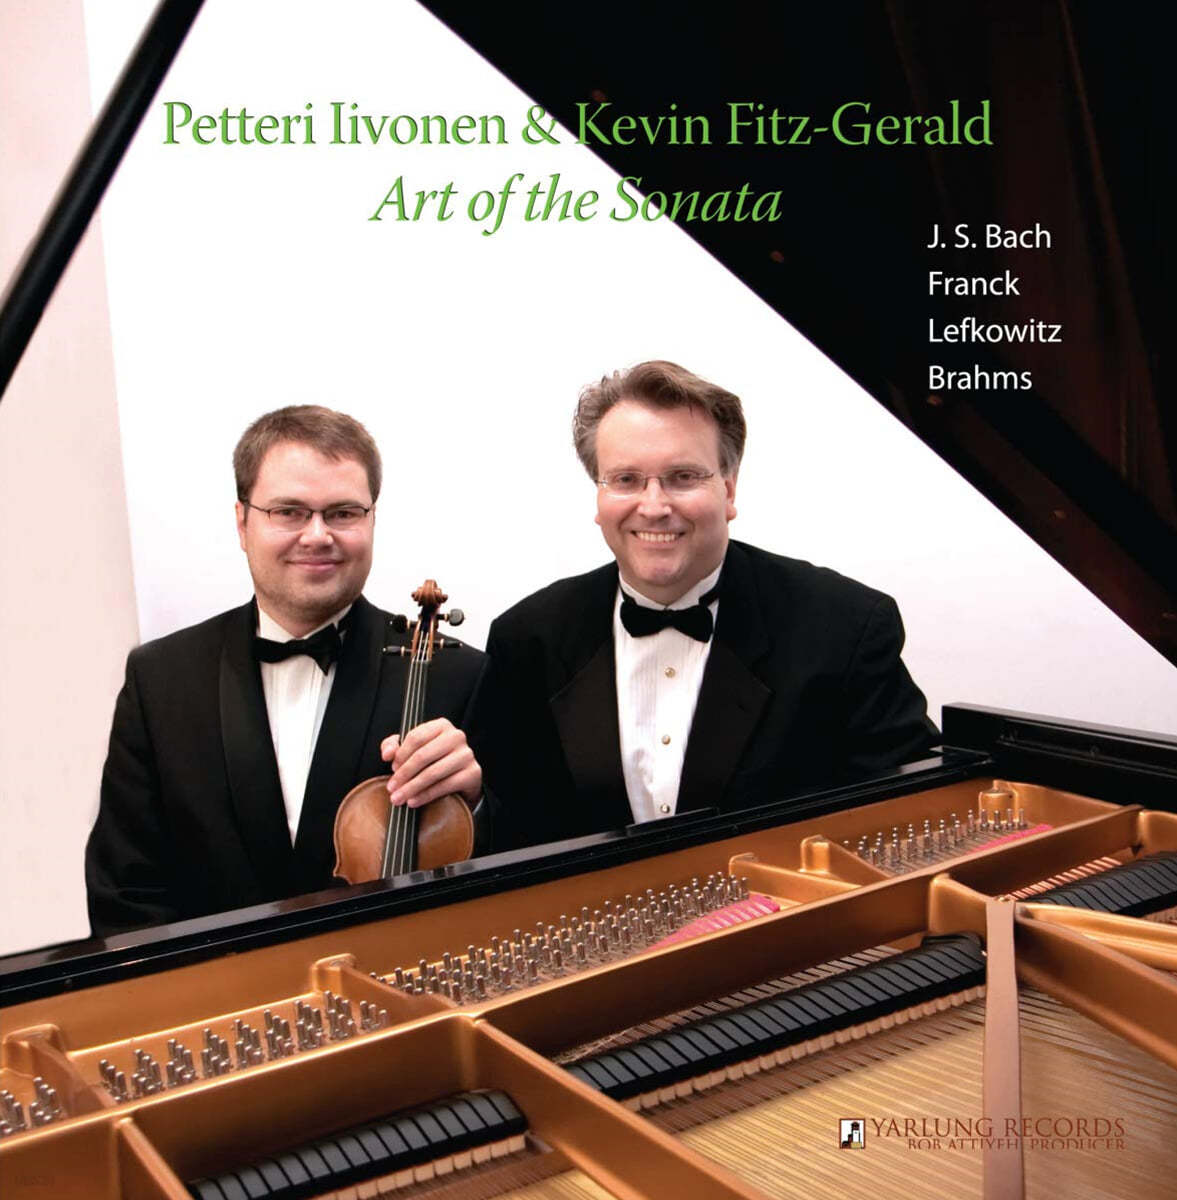 Petteri Iivonen 바흐 / 프랑크 / 브람스: 소나타의 예술 (Bach / Franck / Brahms: Art of the Sonata) 